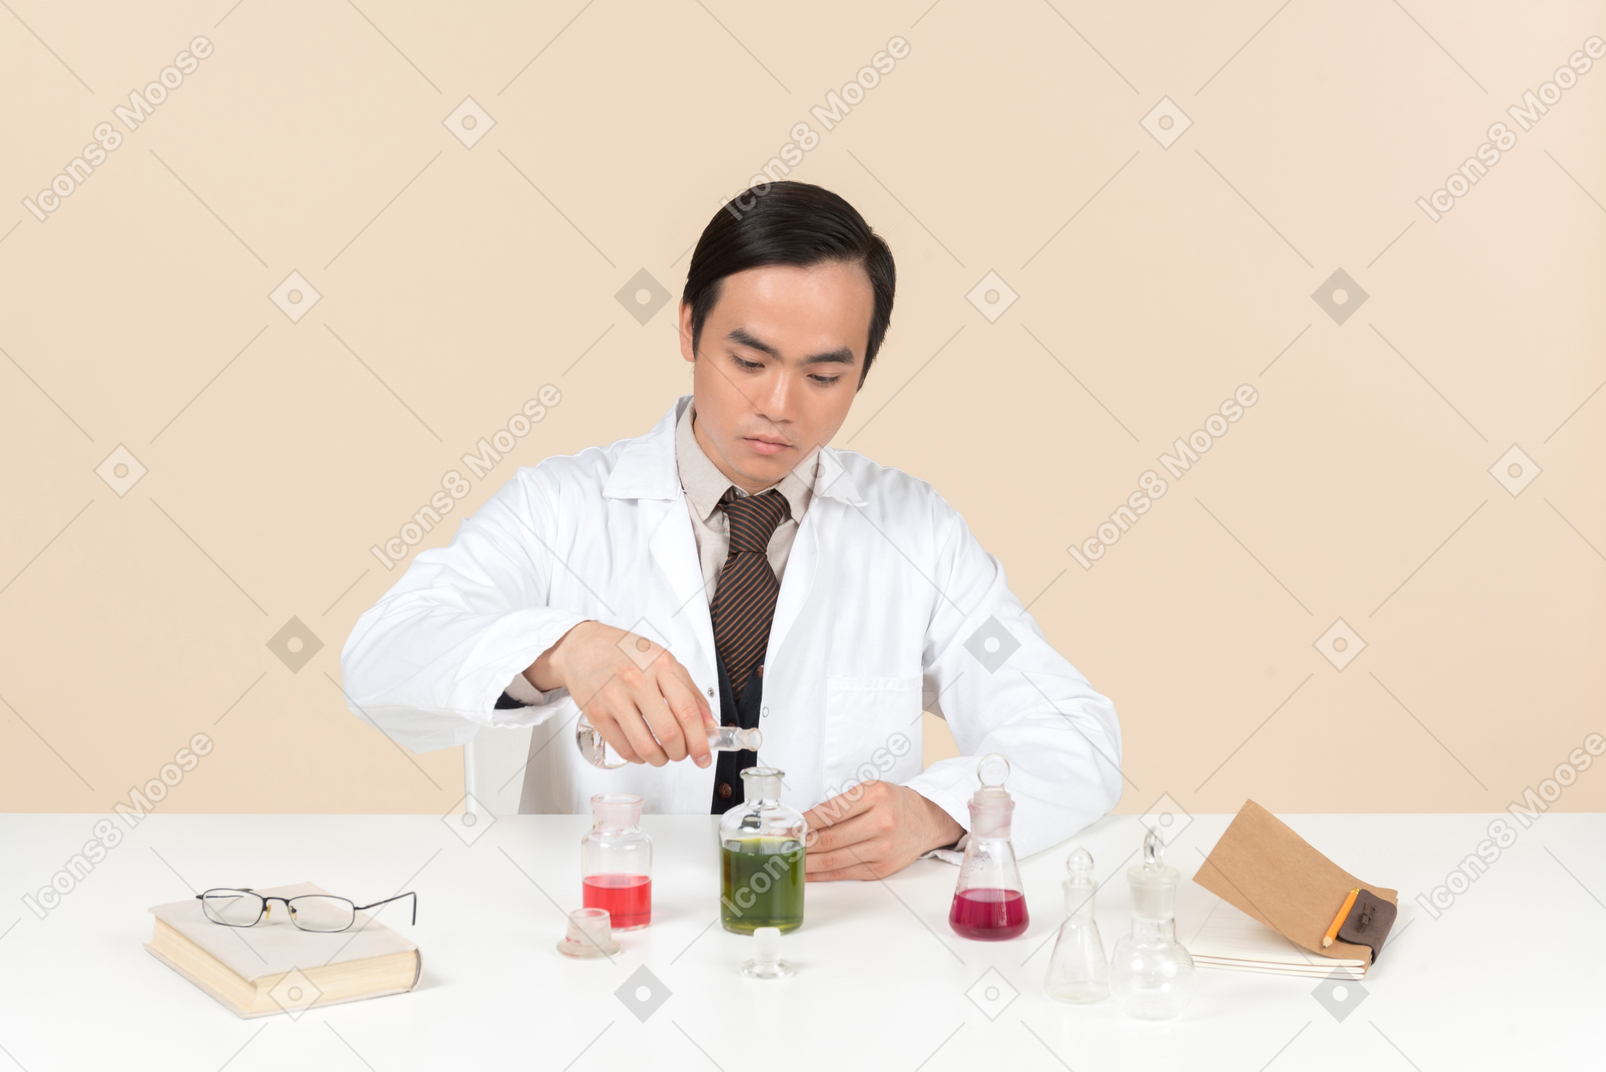 Азиатский ученый в белом халате работает над химическим экспериментом